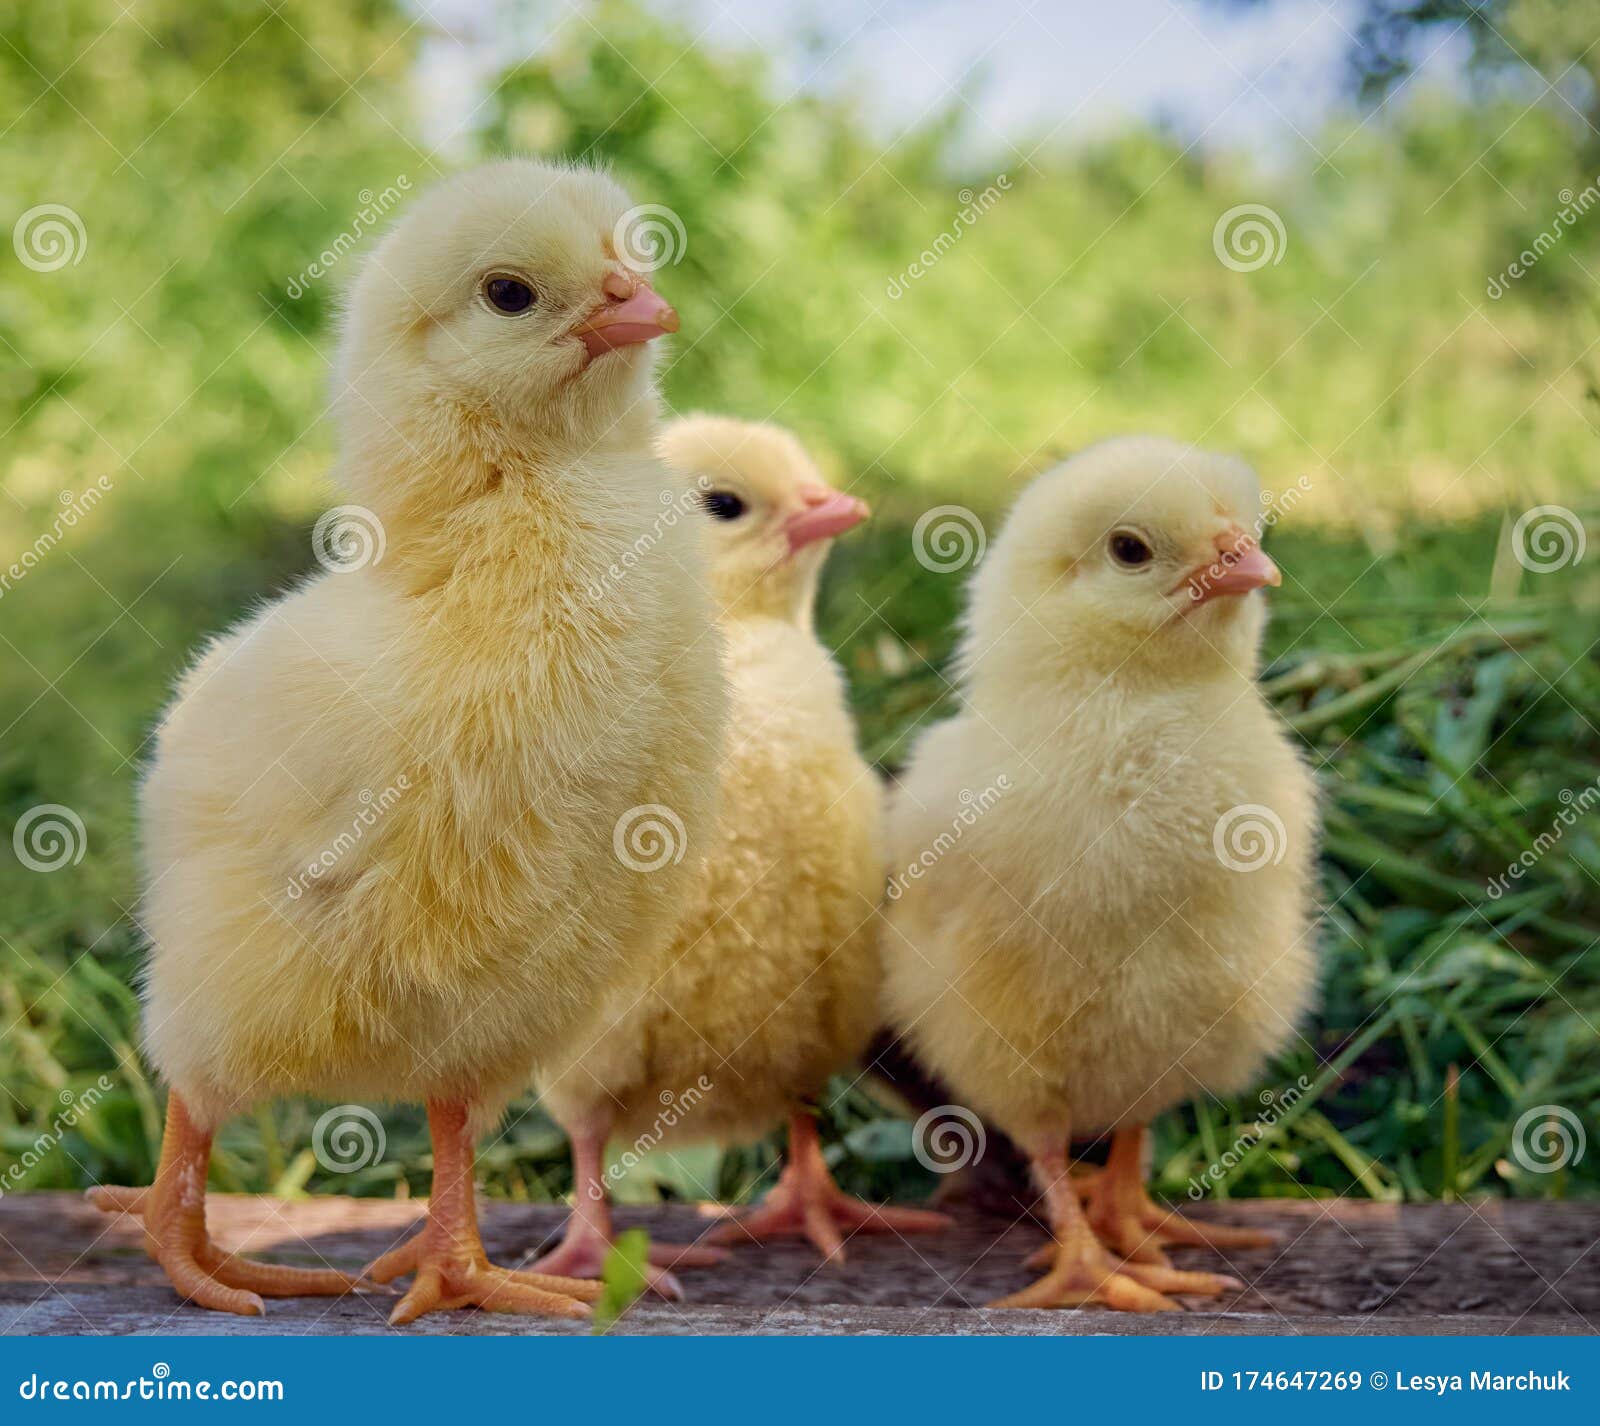 Natural Chicks